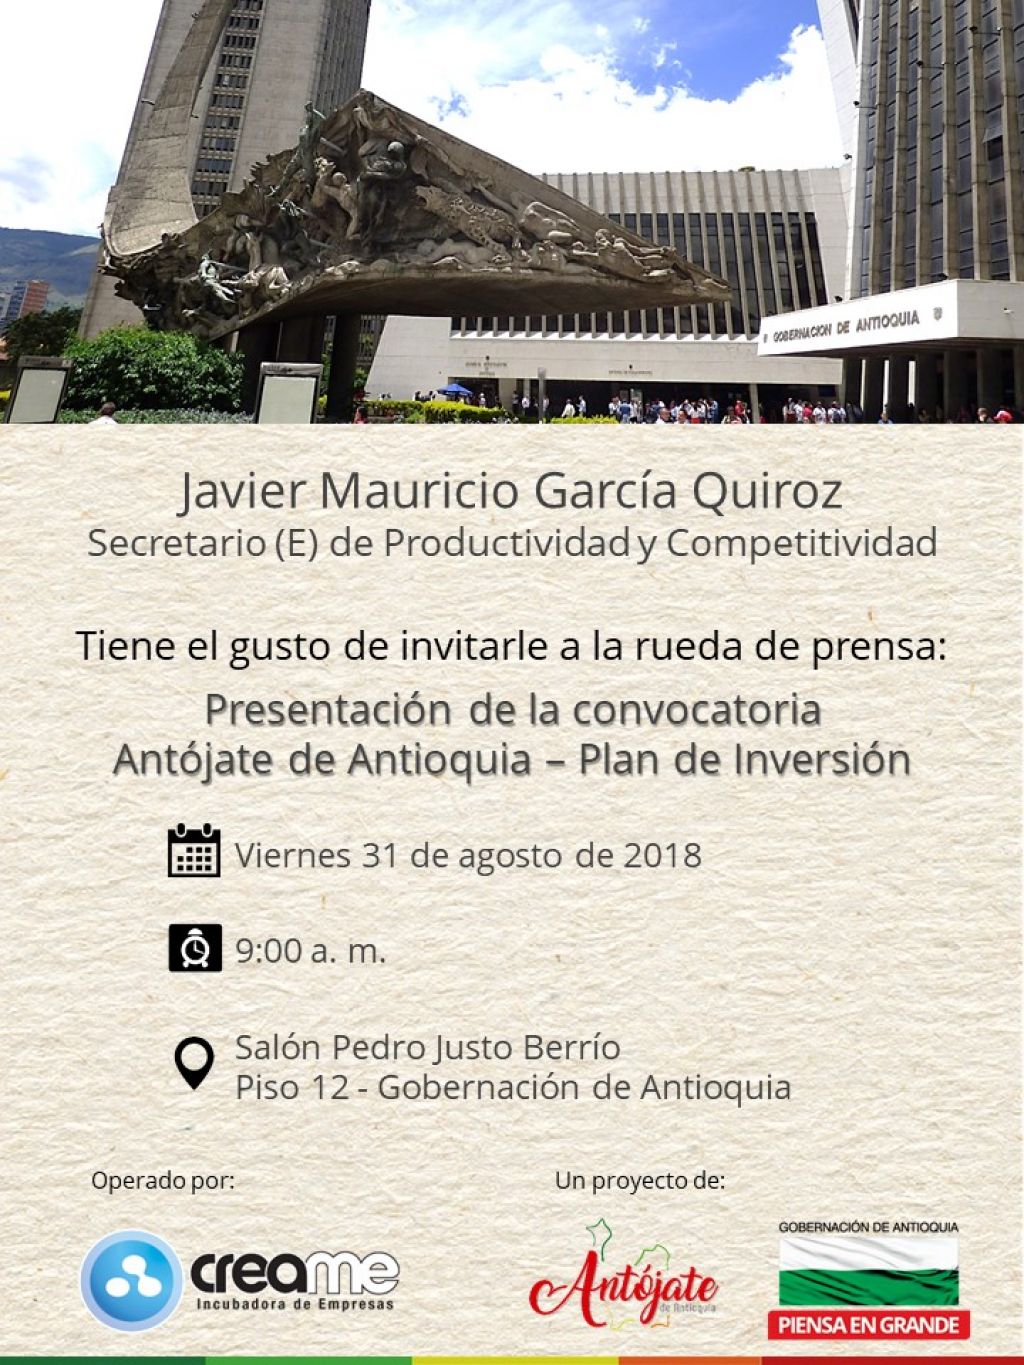 Invitación: rueda de prensa Antójate de Antioquia. Viernes 31 de agosto de 2018. 9:00 a.m.